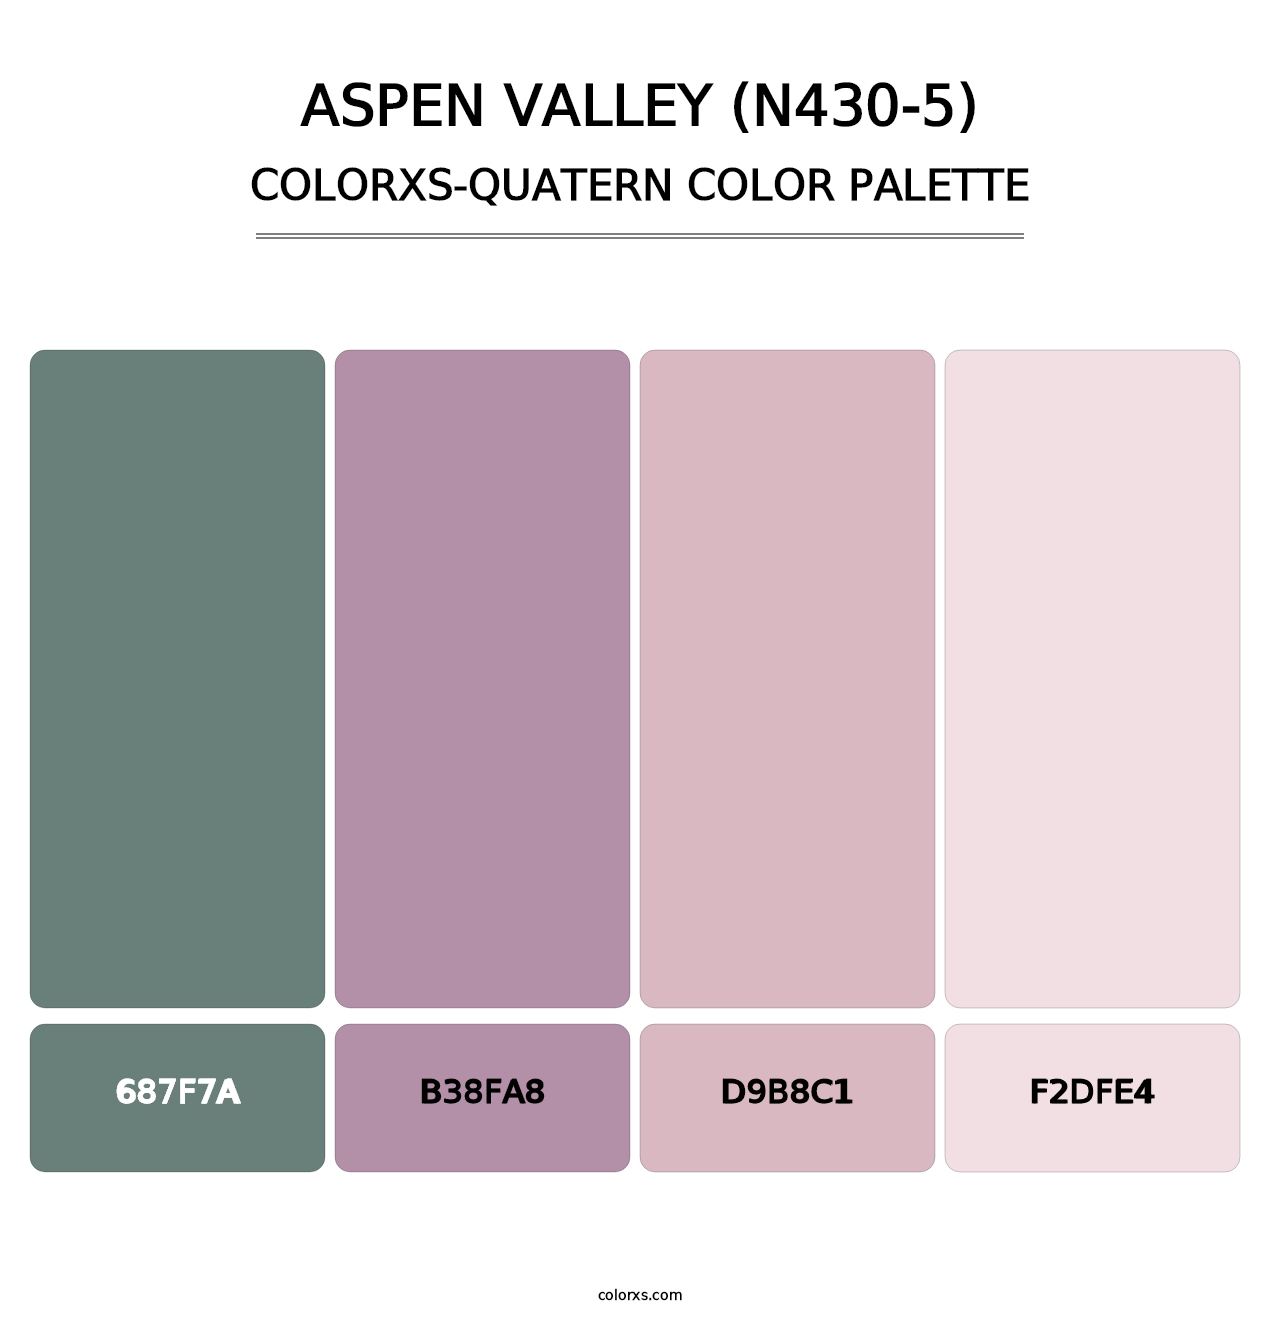 Aspen Valley (N430-5) - Colorxs Quatern Palette